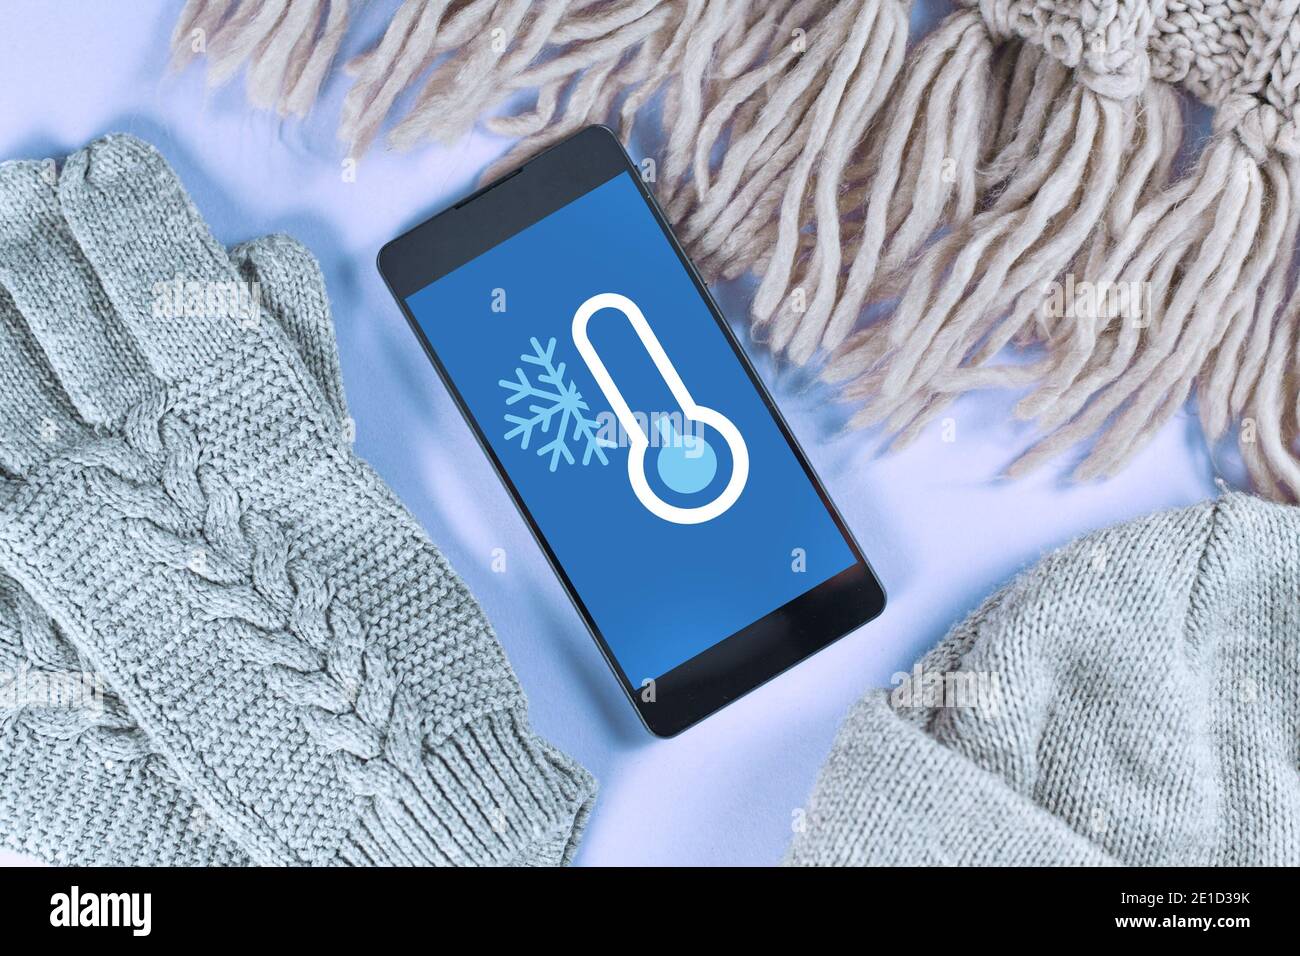 Concetto per temperature basse con neve e meno gradi con telefono cellulare con previsioni meteo circondato da abiti caldi invernali come la sciarpa Foto Stock